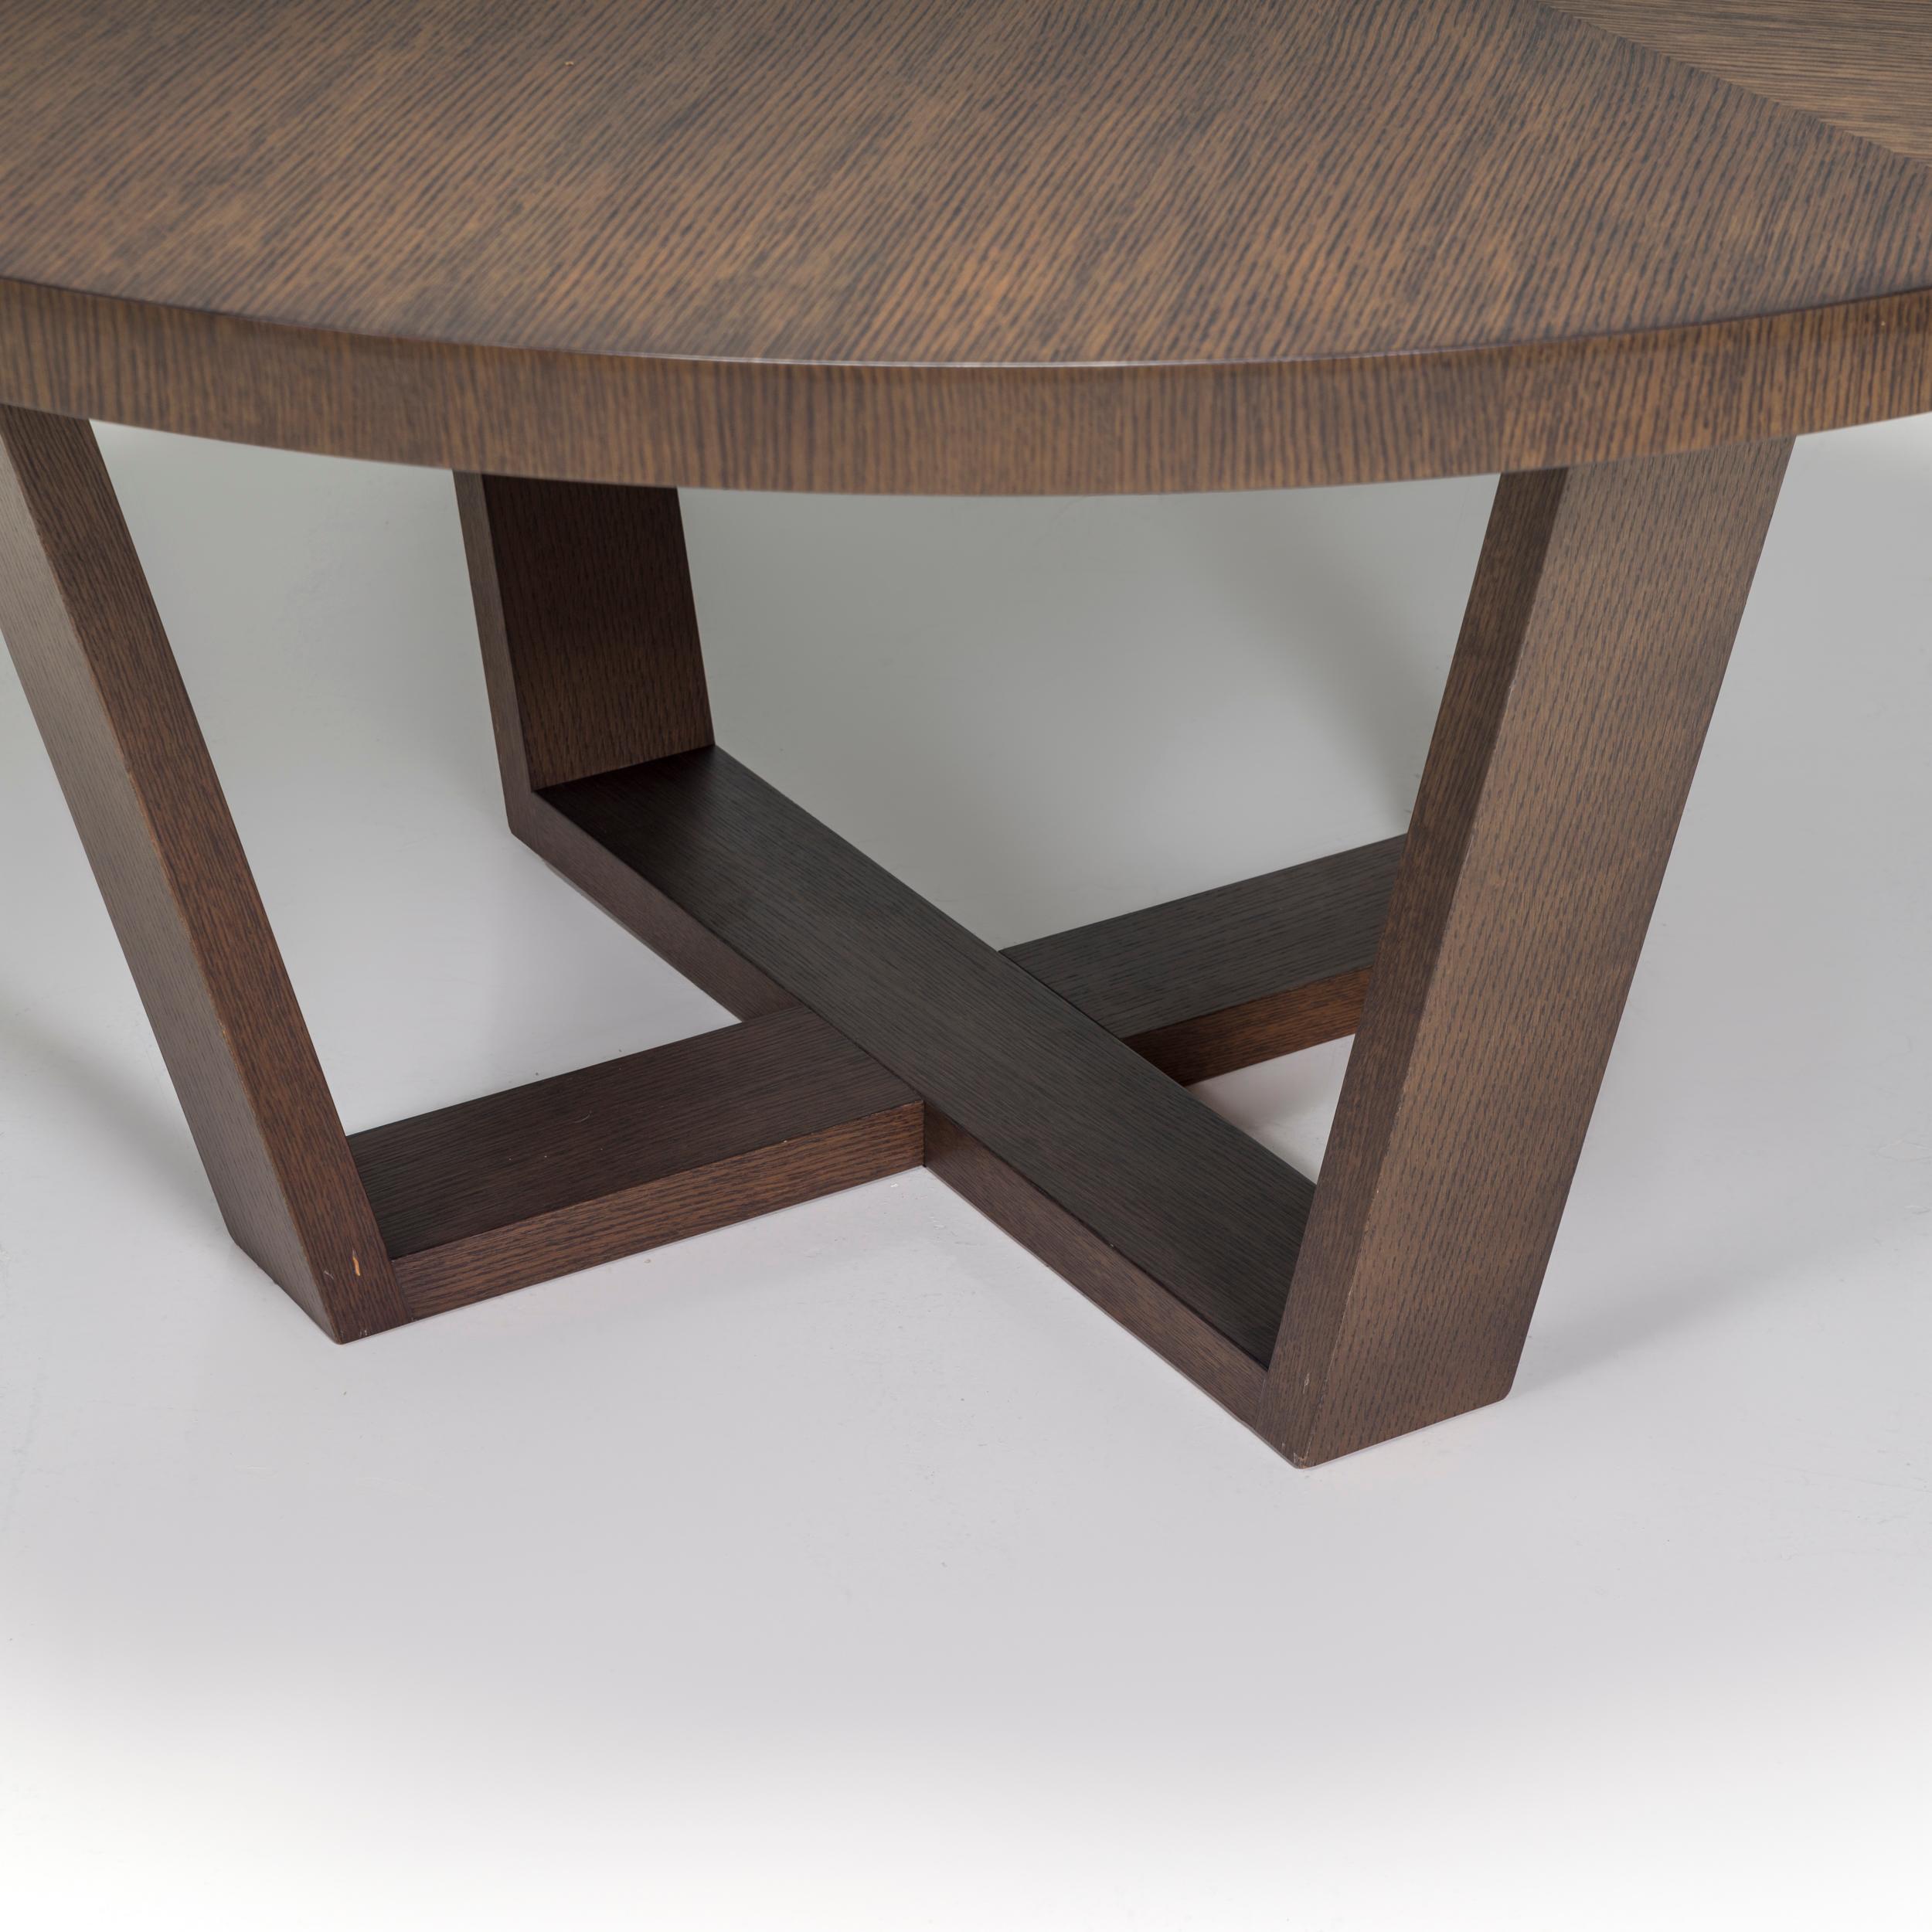 Der ursprünglich von Antonio Citterio im Jahr 2012 für seine Maxalto Simplice Collection entworfene Esstisch Xilos ist ein fantastisches Beispiel für zeitgenössisches italienisches Design.

Der aus grauer Eiche gefertigte Tisch hat eine große runde